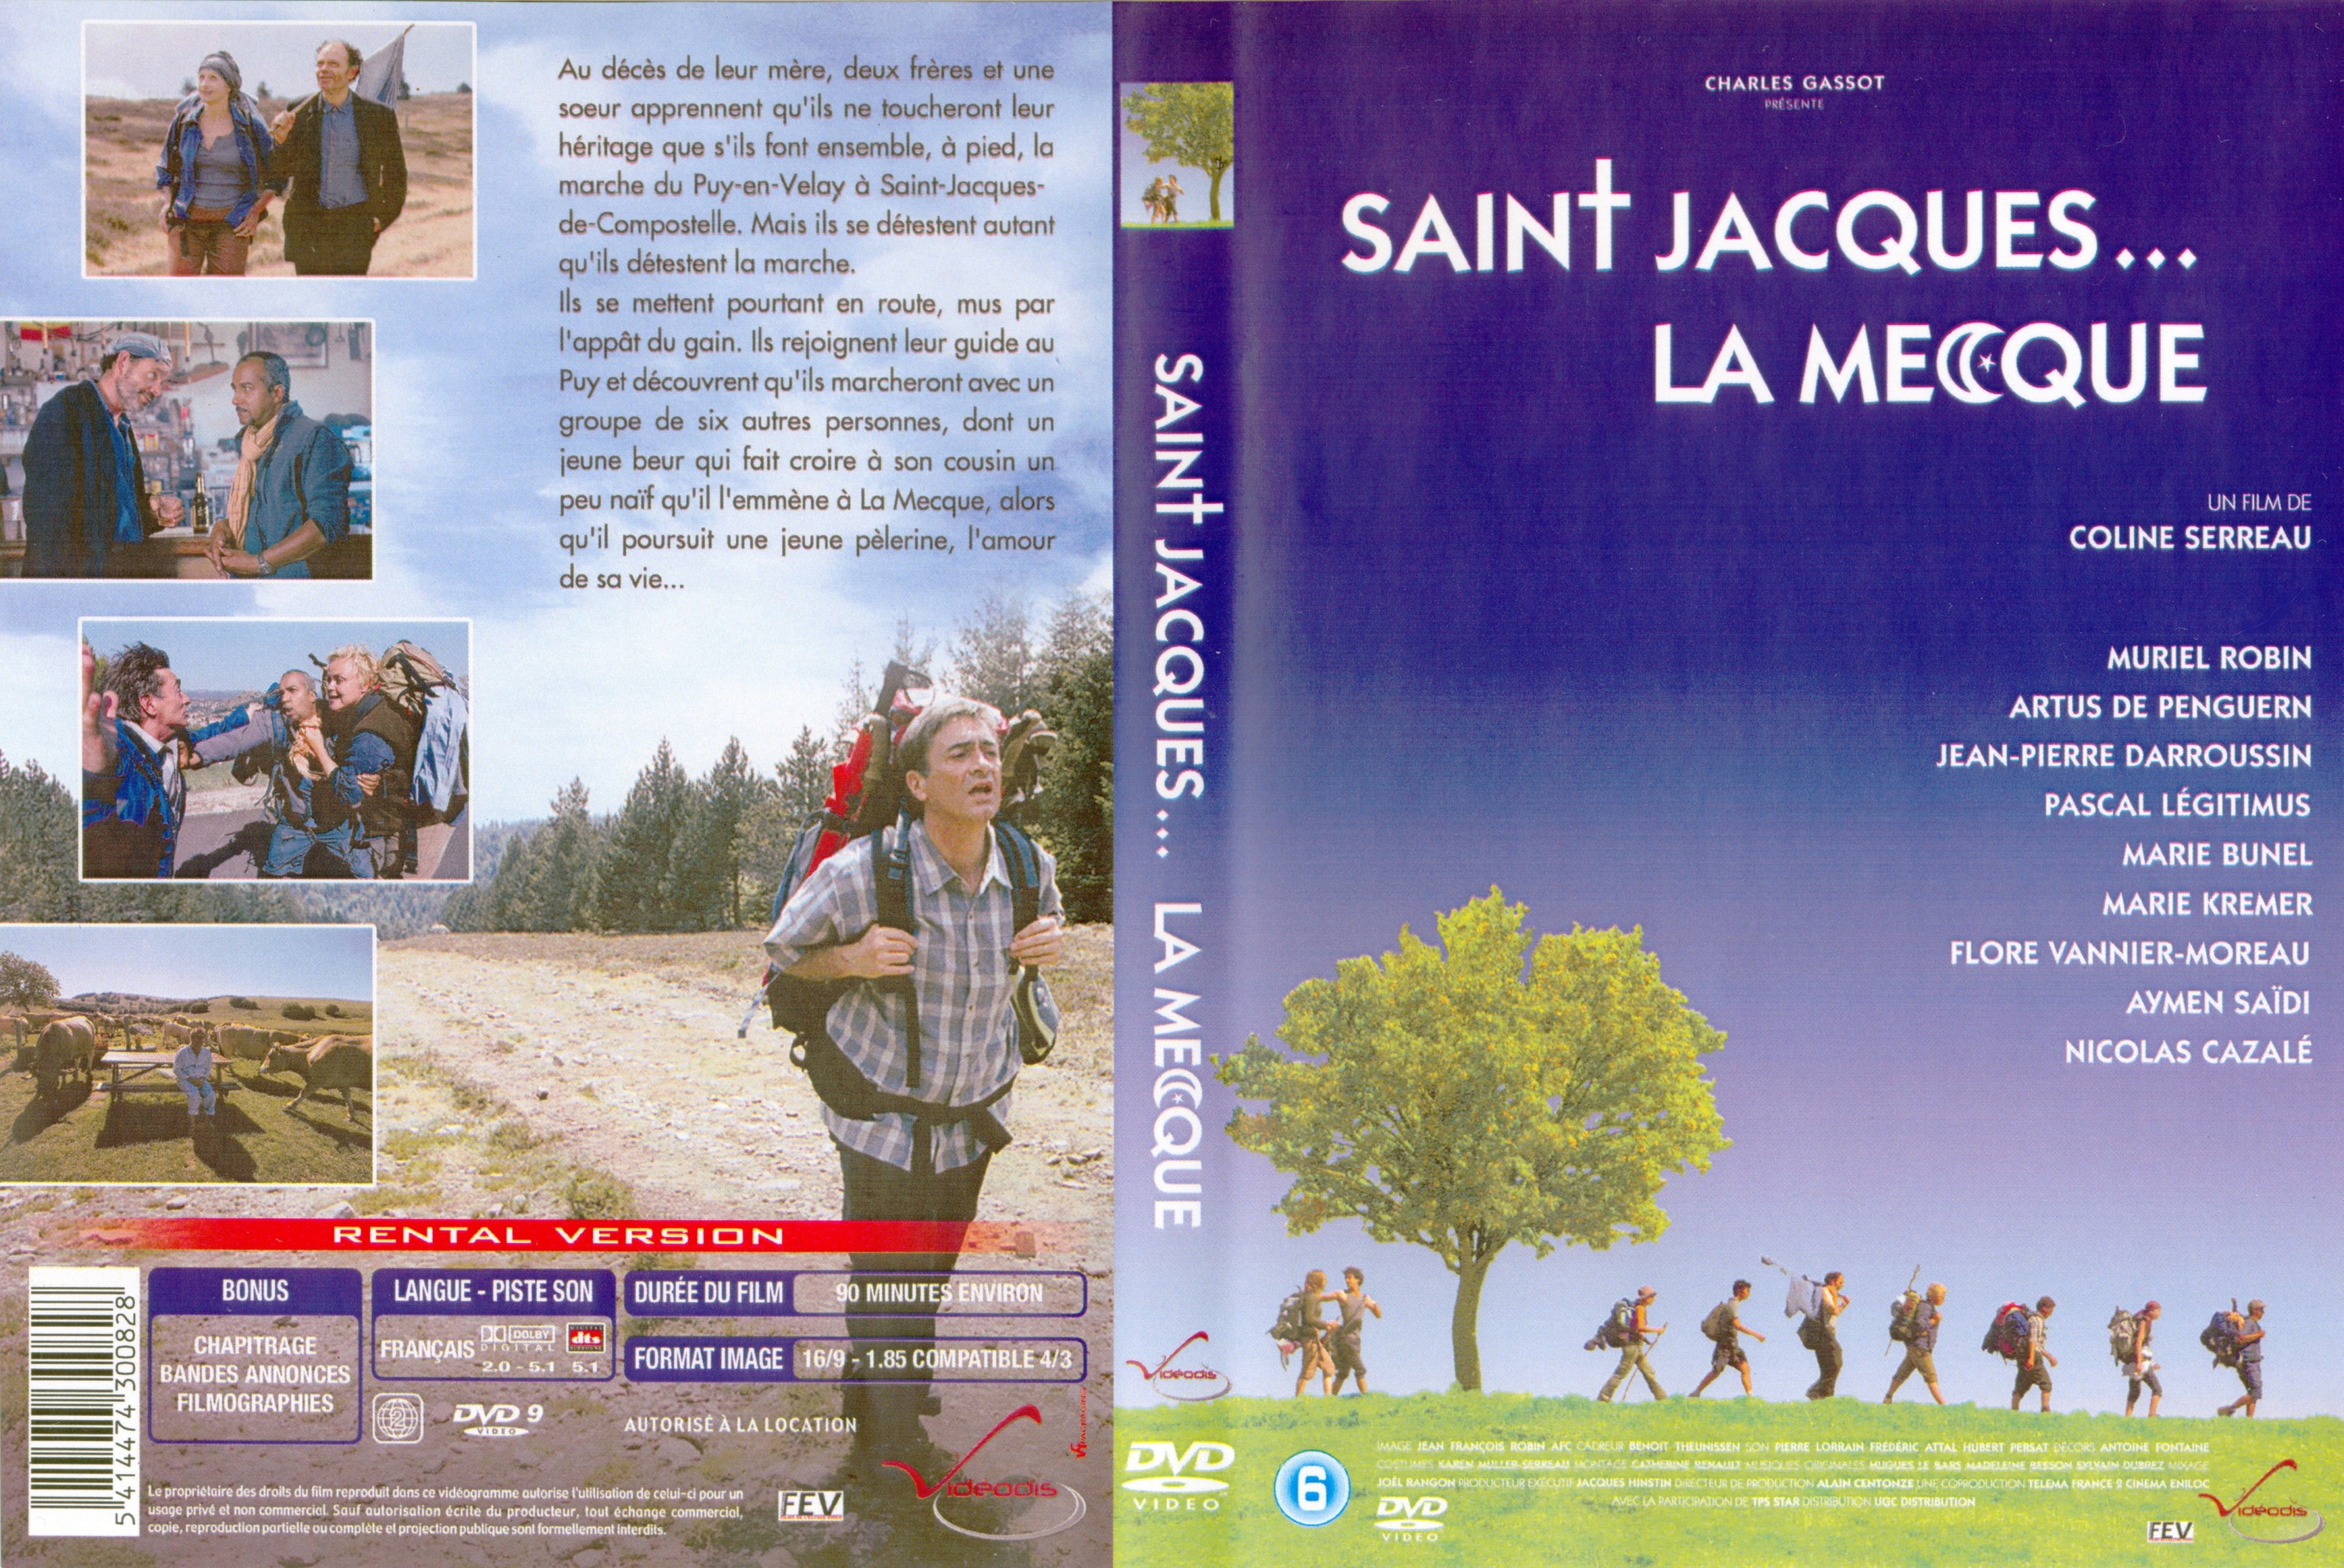 Jaquette DVD Saint-Jacques la mecque v2